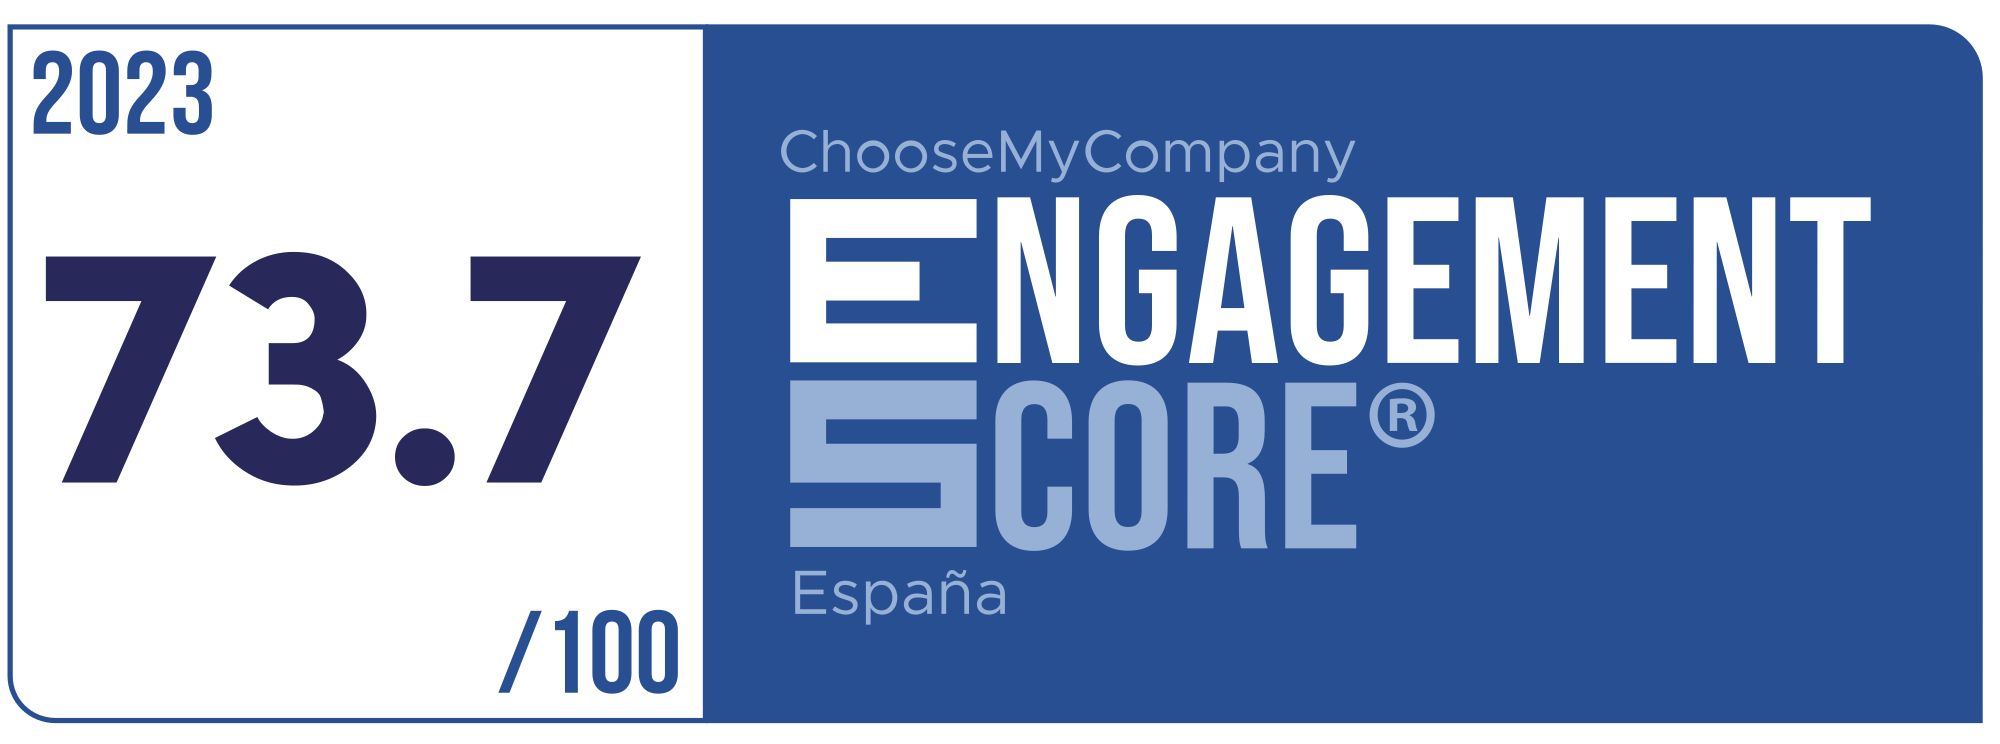 Label Engagement Score 2023 España